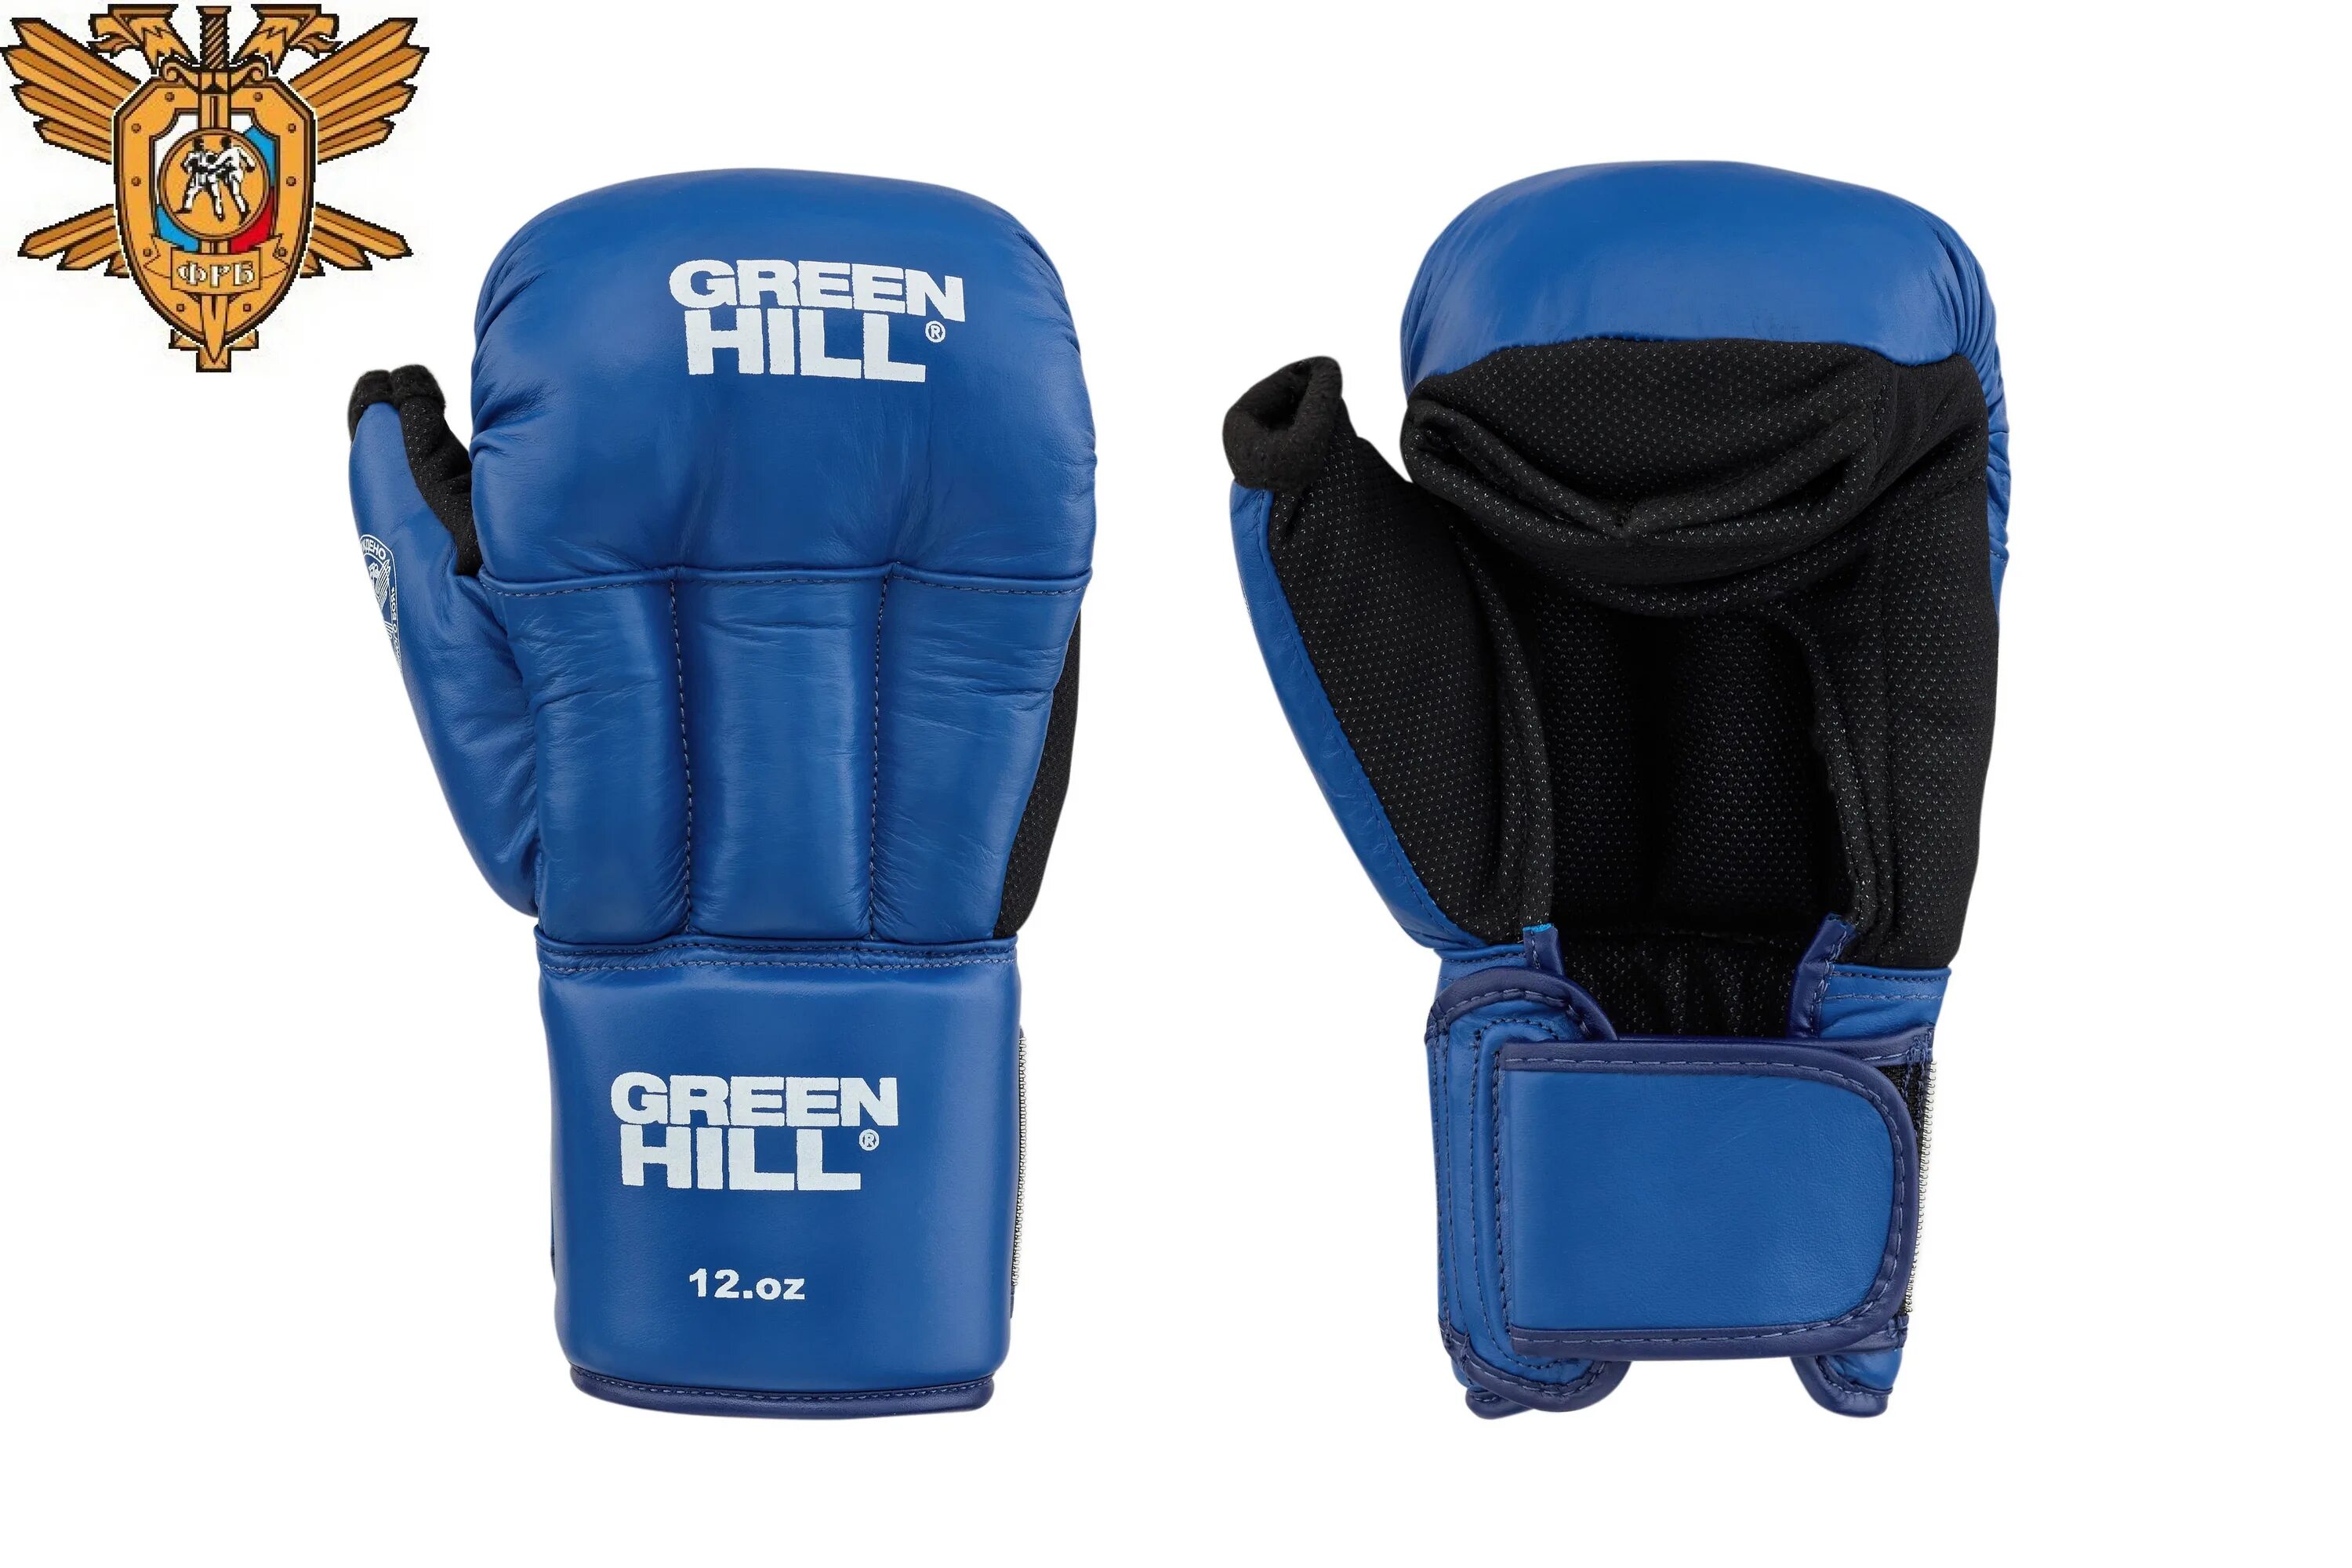 Перчатки для АРБ Green Hills. Синие перчатки Грин Хилл. Перчатки для рукопашного боя Green Hill. Перчатки для рукопашного боя Rusco Sport.